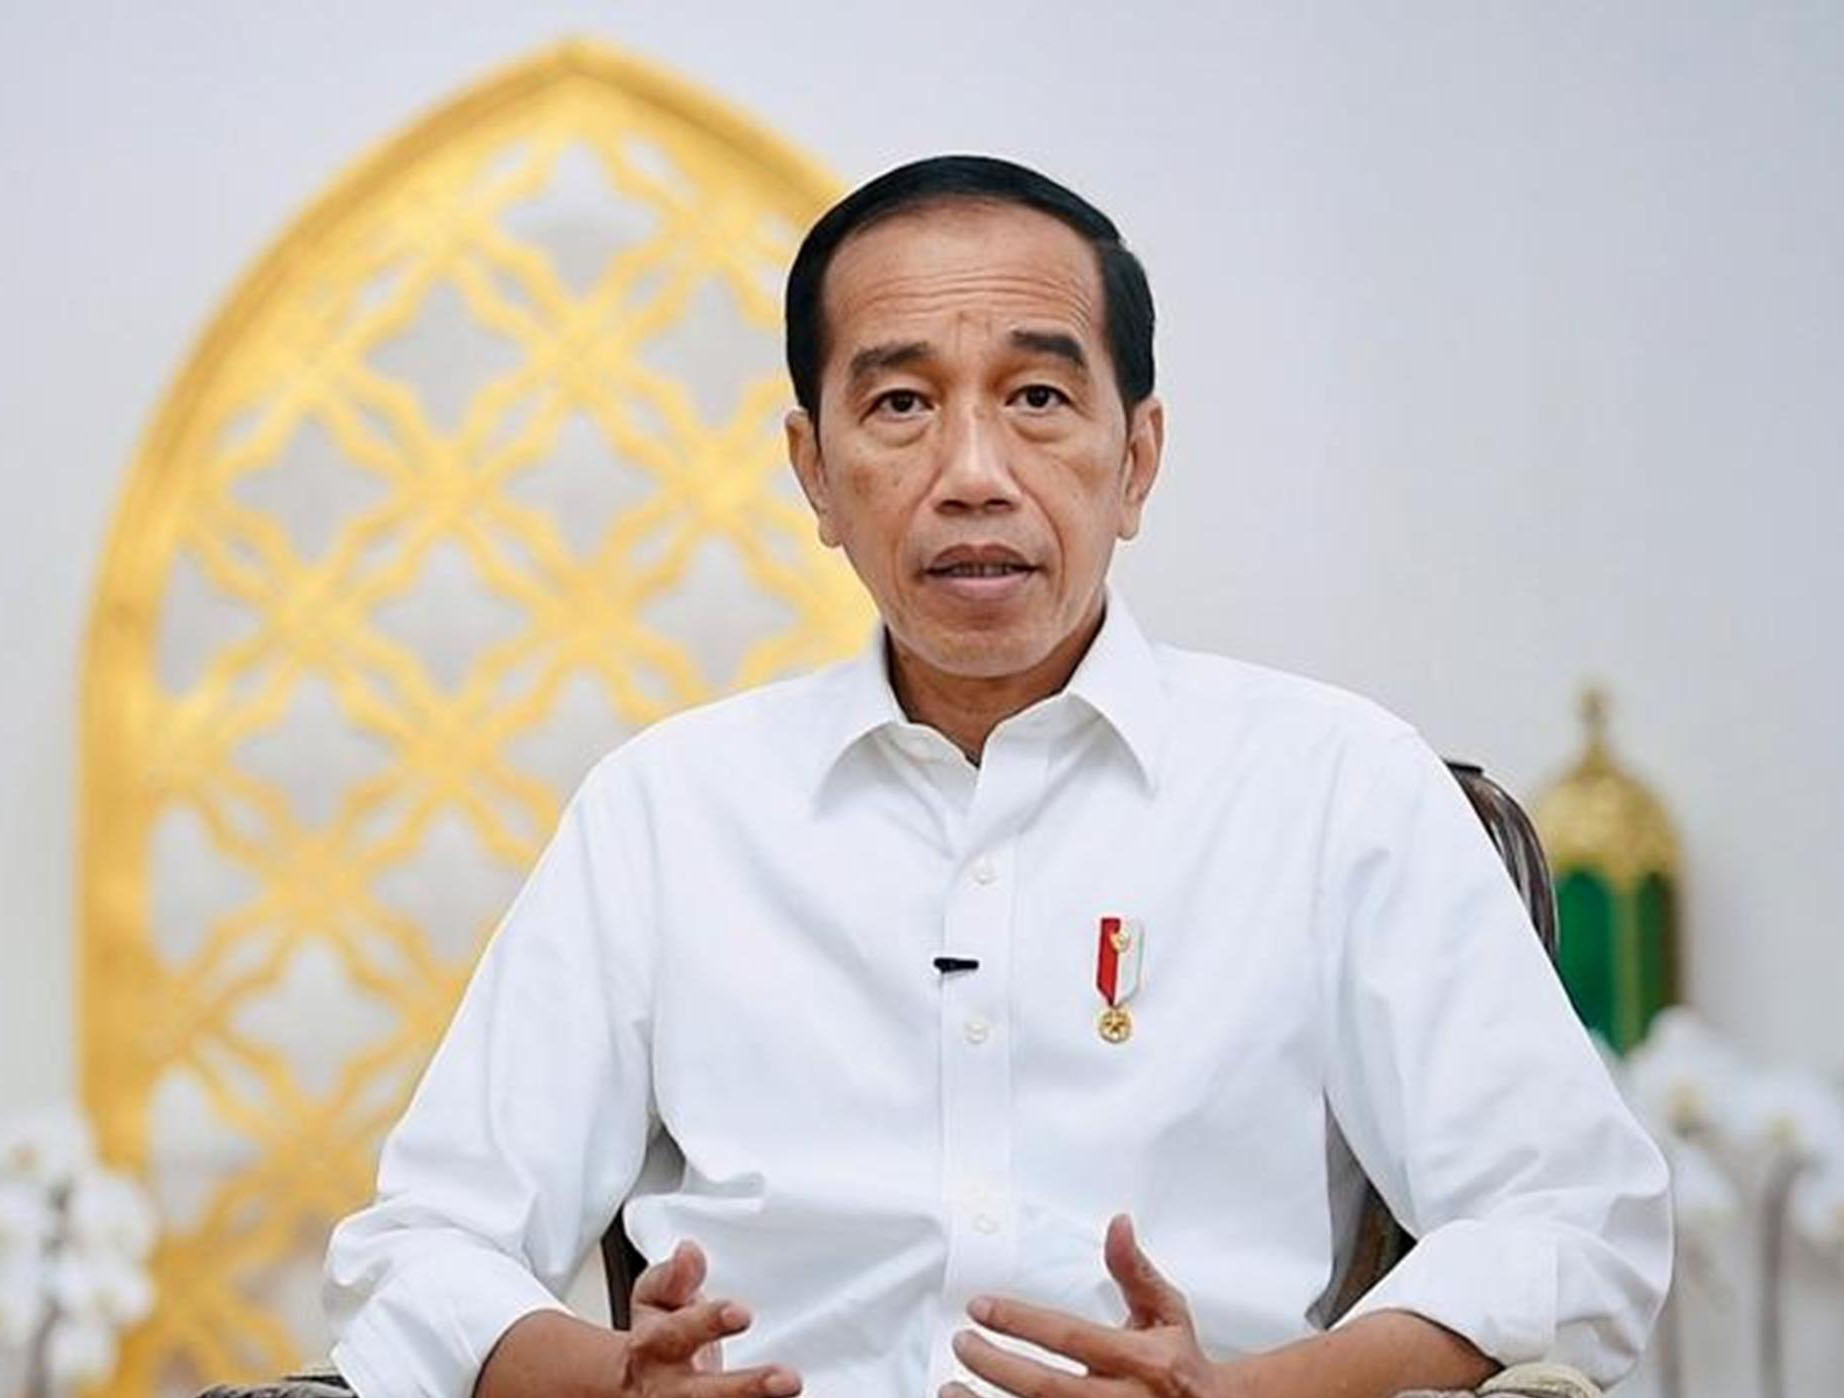 Kasus Kabasarnas, Jokowi Evaluasi Penempatan TNI di Jabatan Sipil. Dikembalikan ke Sipilkah?